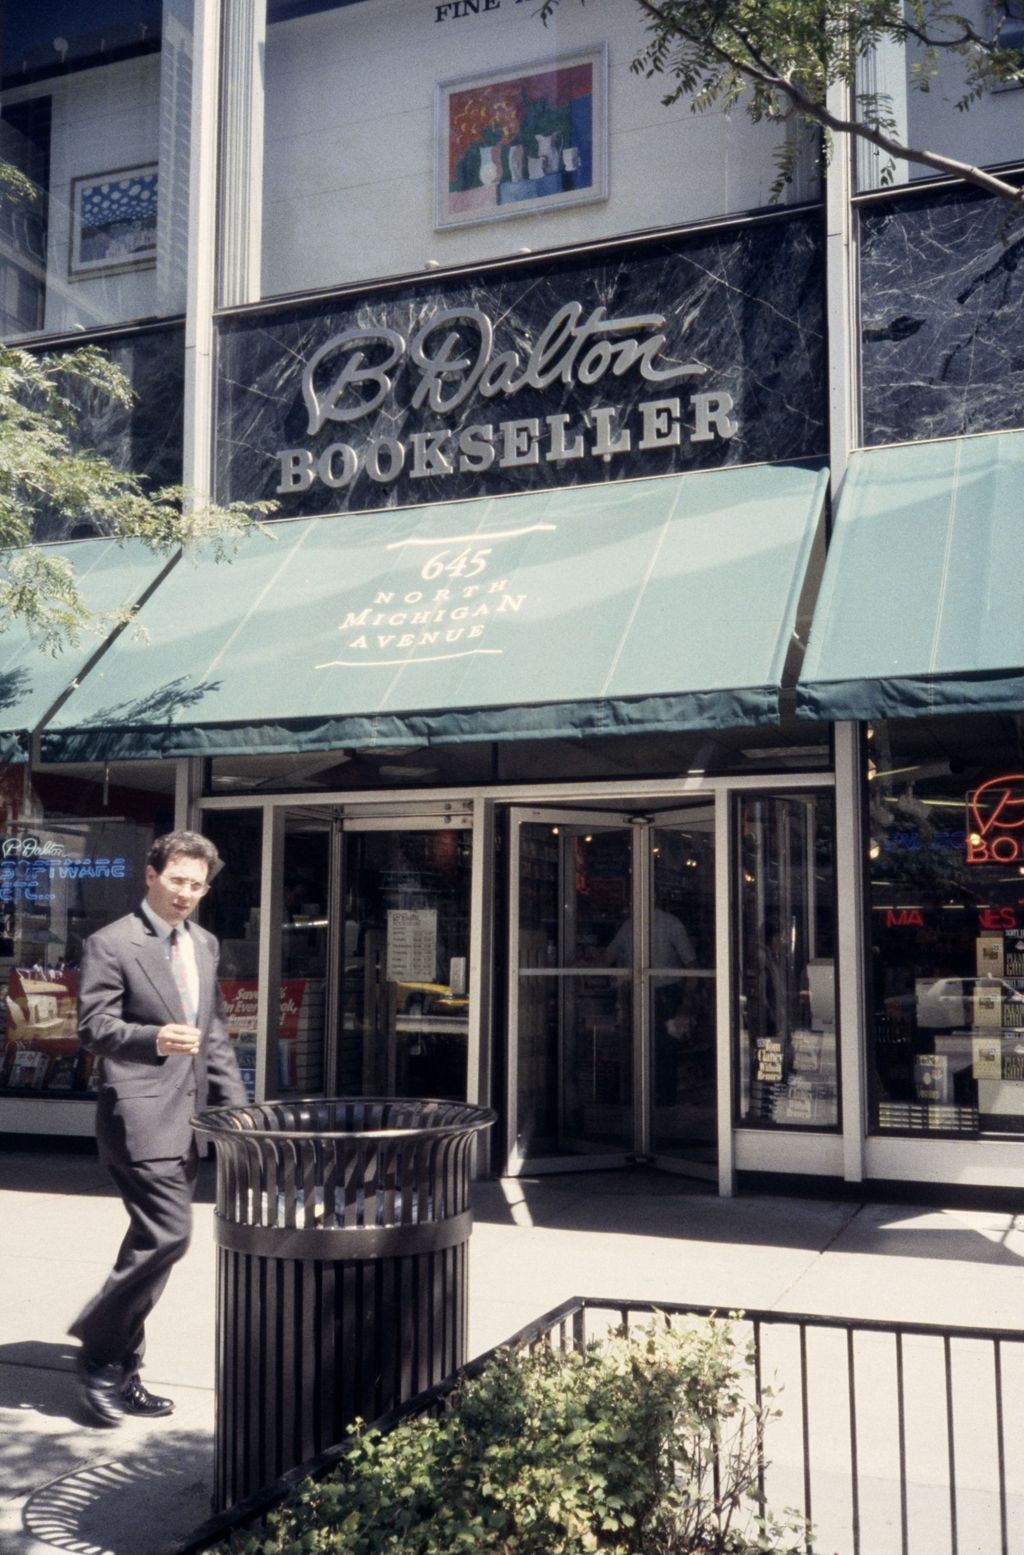 B. Dalton bookstore, North Michigan Avenue